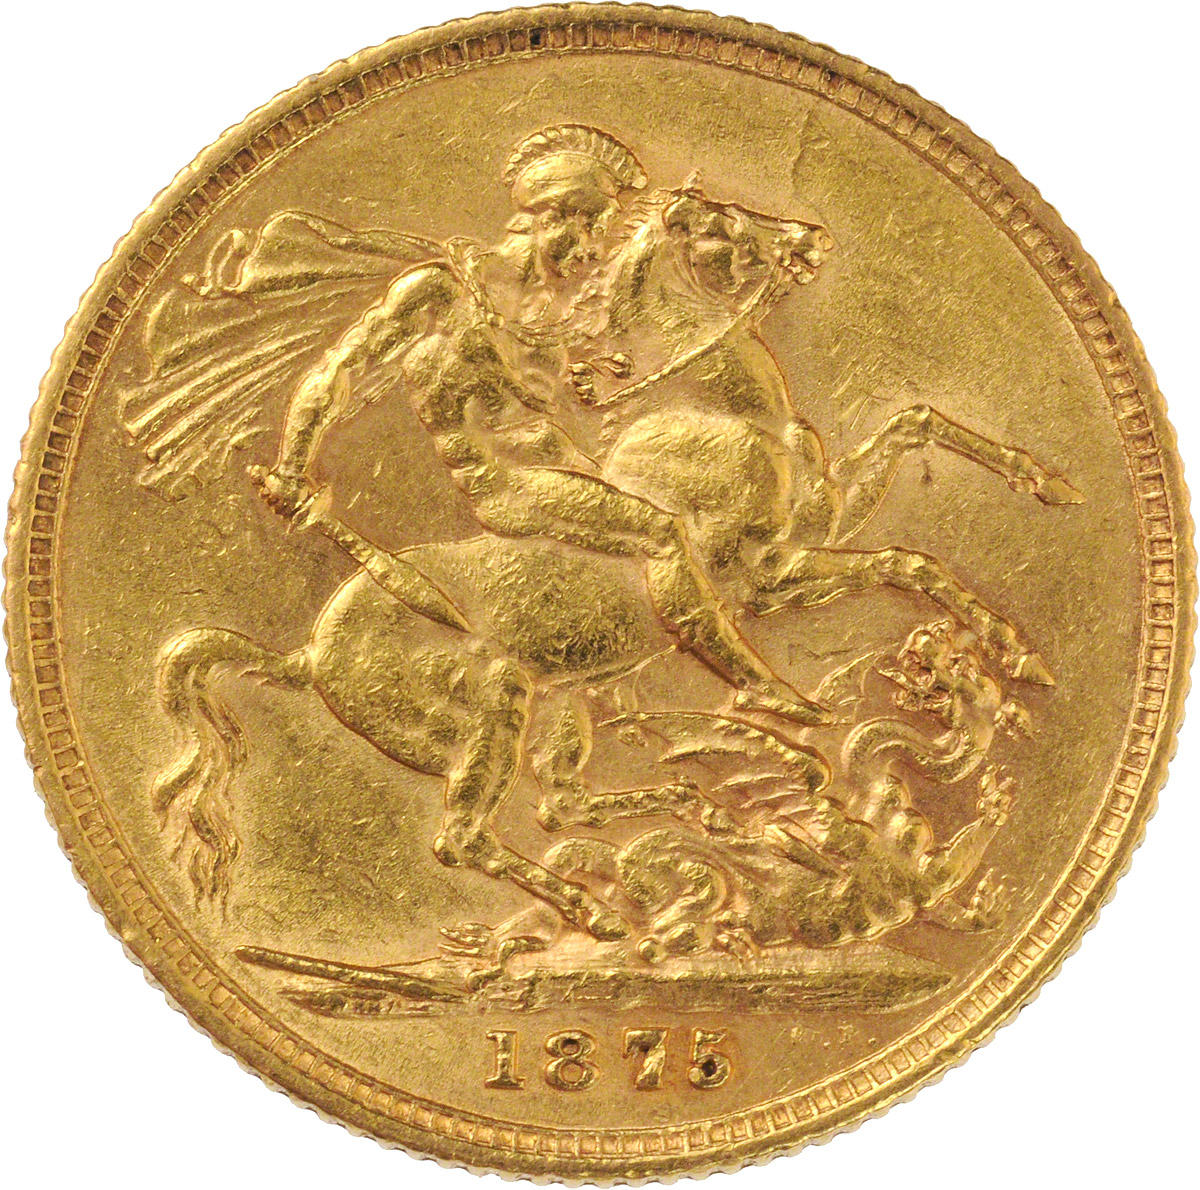 1875 Βικτώρια (Νομισματοκοπείο Σίδνεϊ)